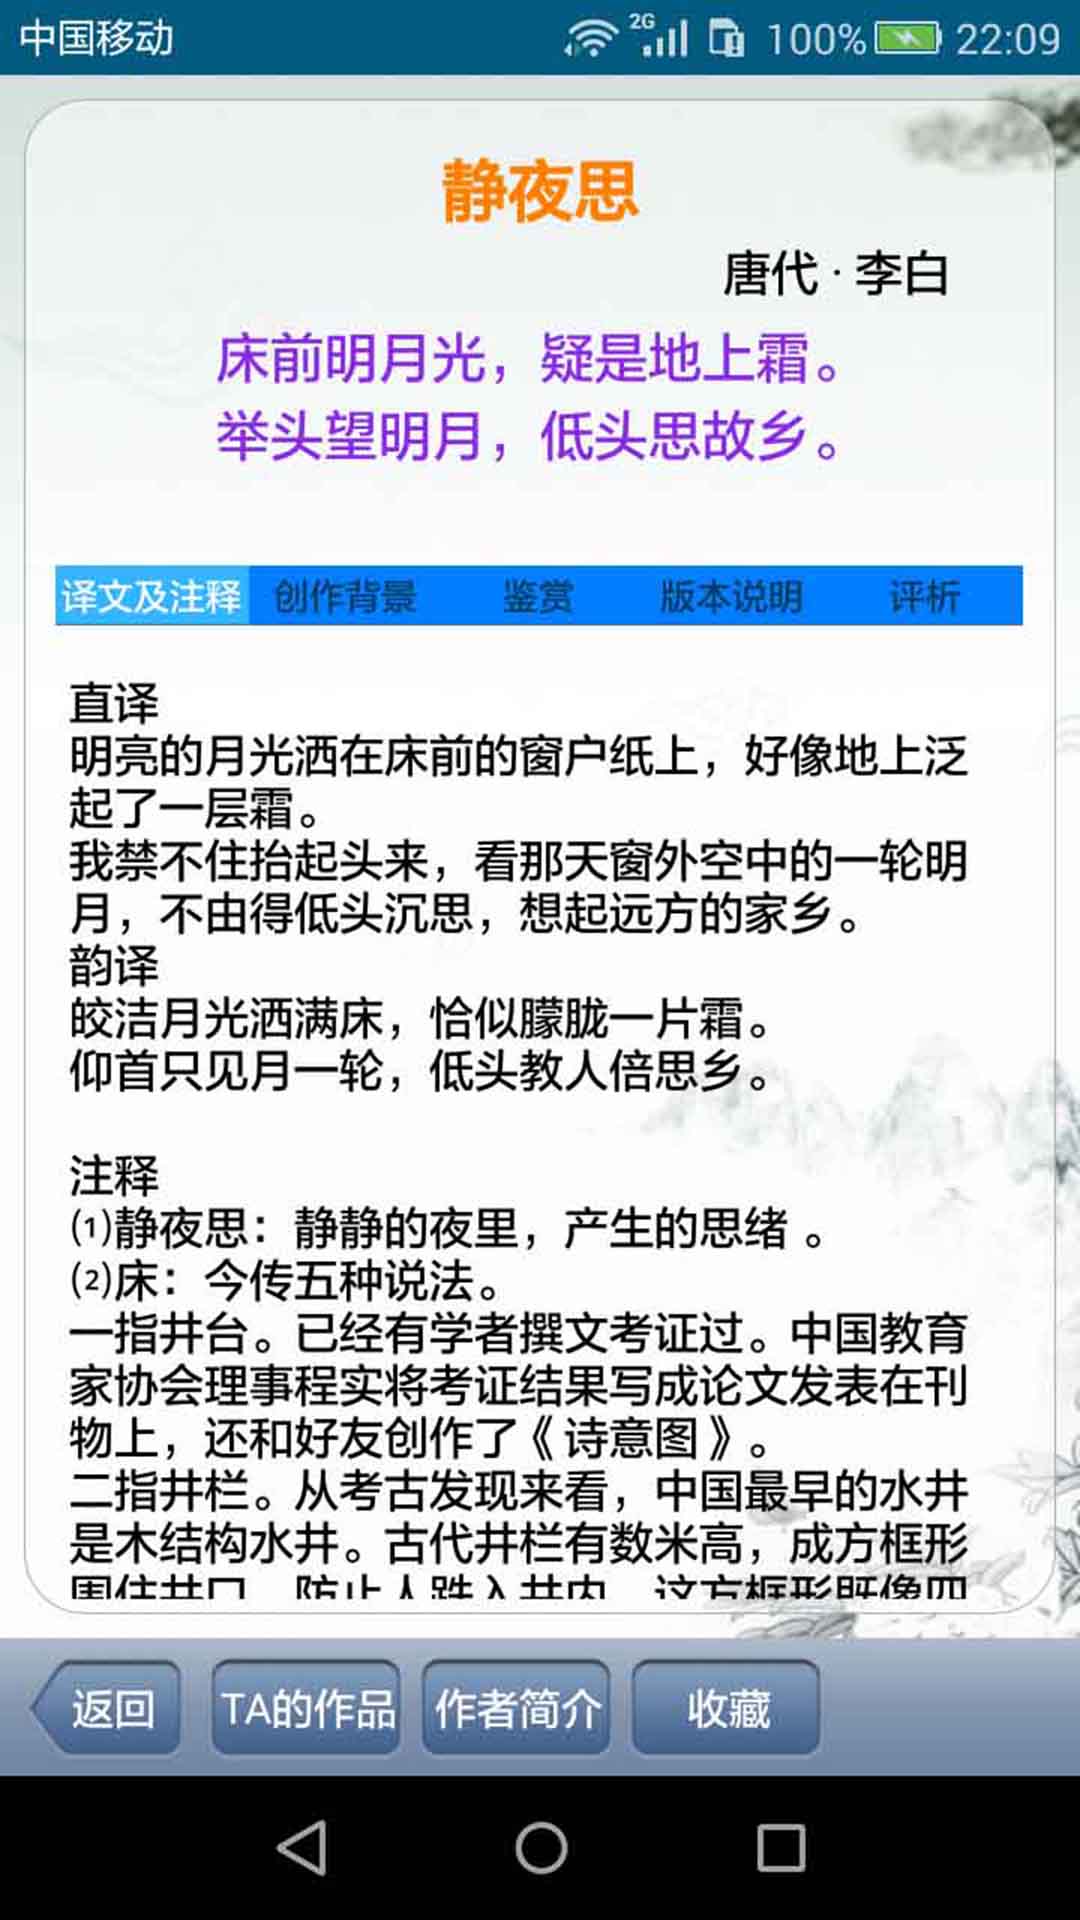 中華古詩詞app下載 第2張圖片